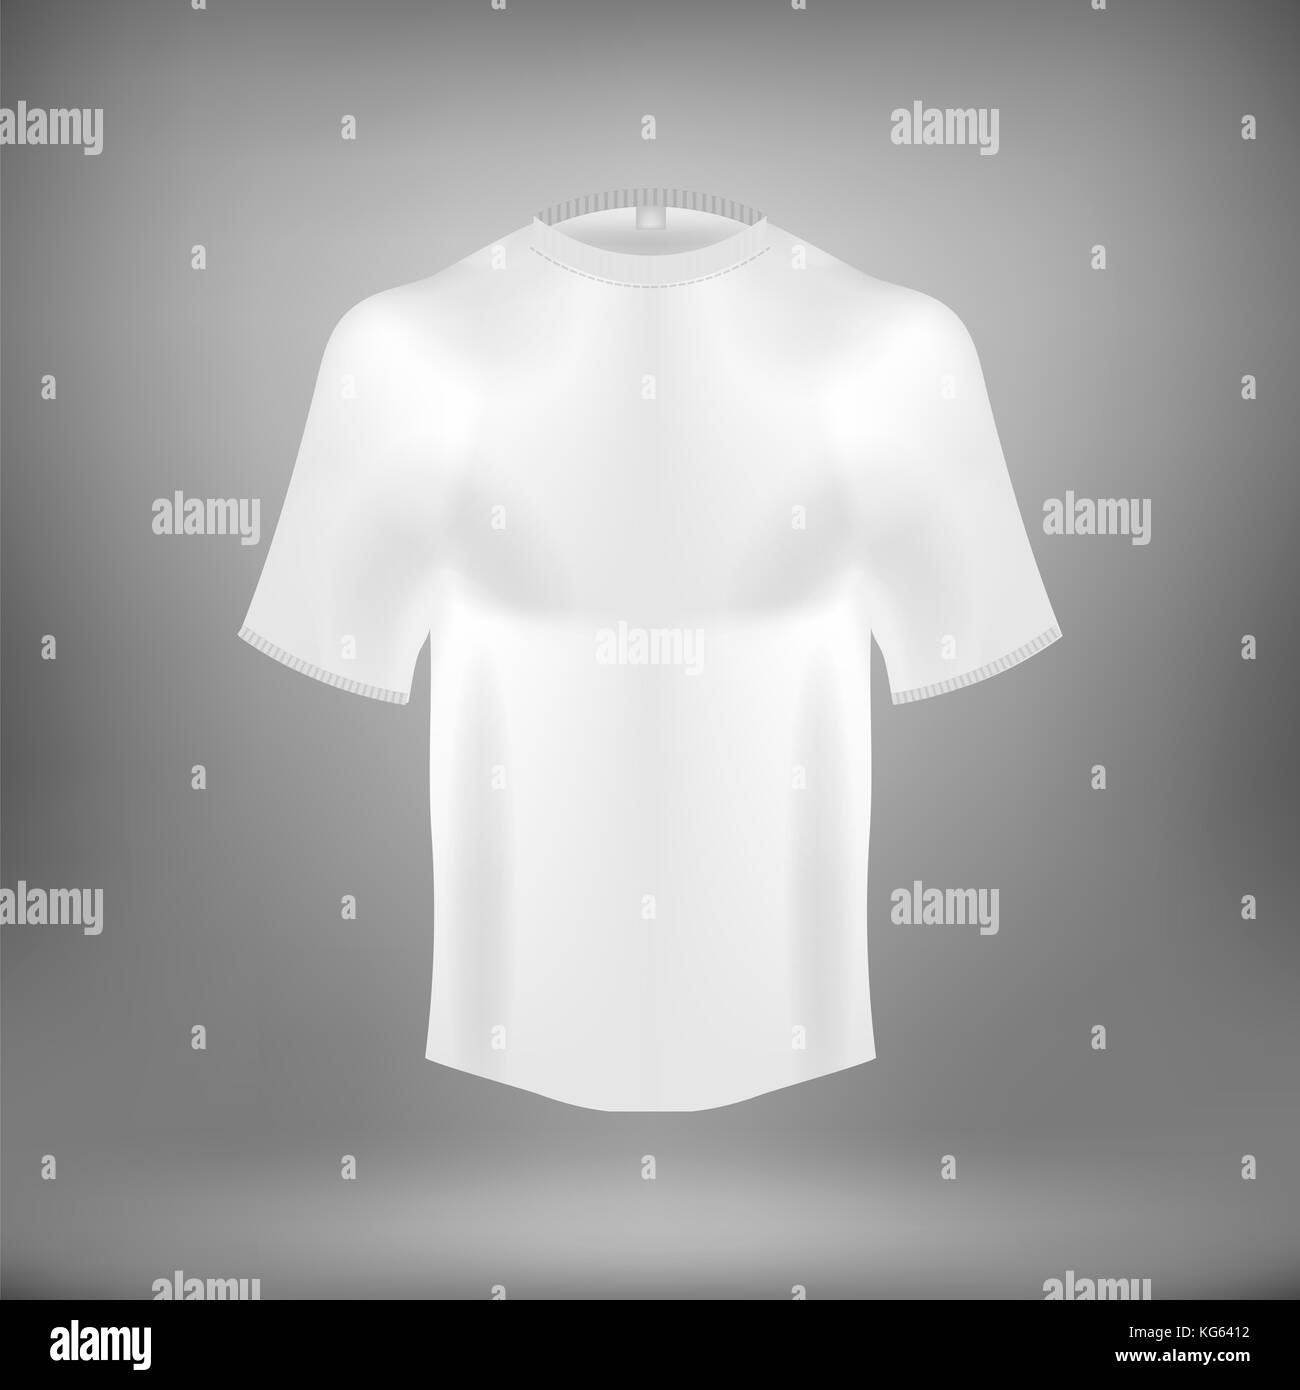 Blank White Cotton t shirt Stock Photo